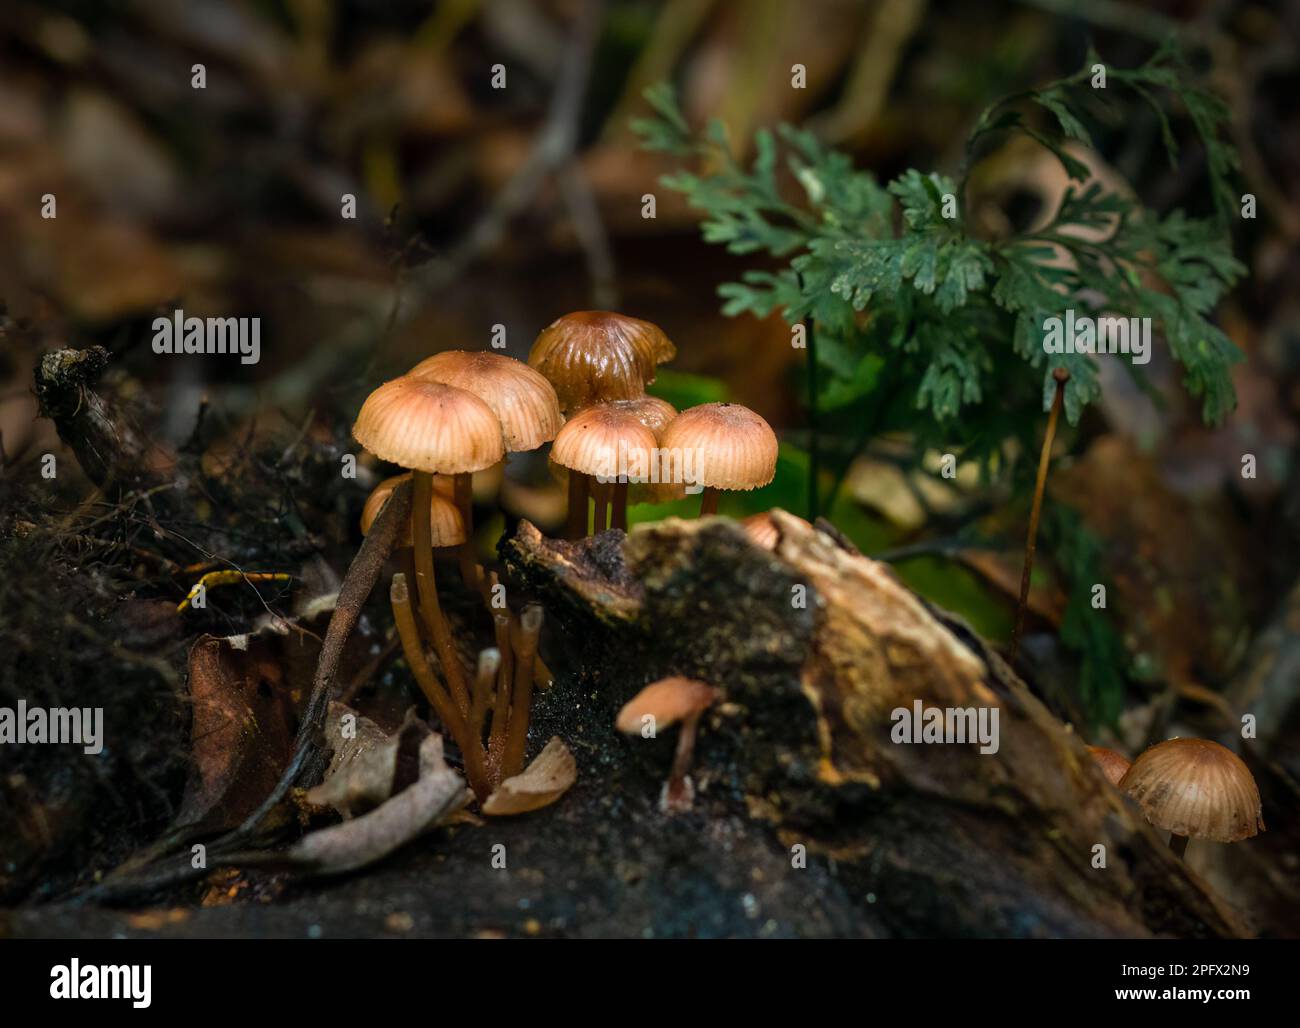 Mushrooms growing on fallen tree trunk in forest. Rotorua. New Zealand. Stock Photo